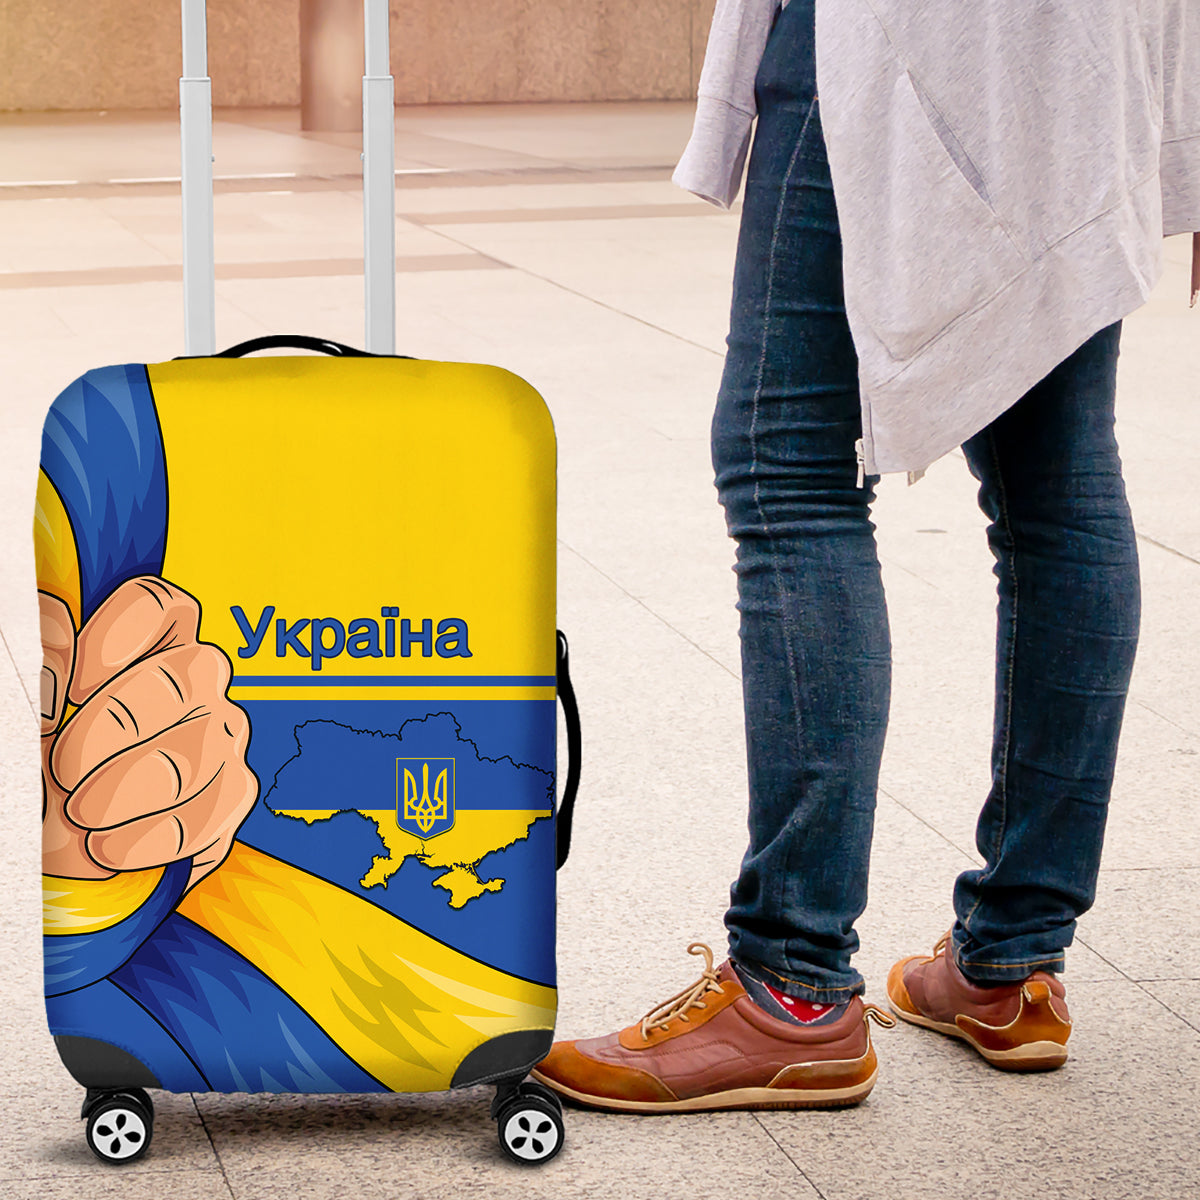 ukraine-unity-day-luggage-cover-ukrainian-unification-act